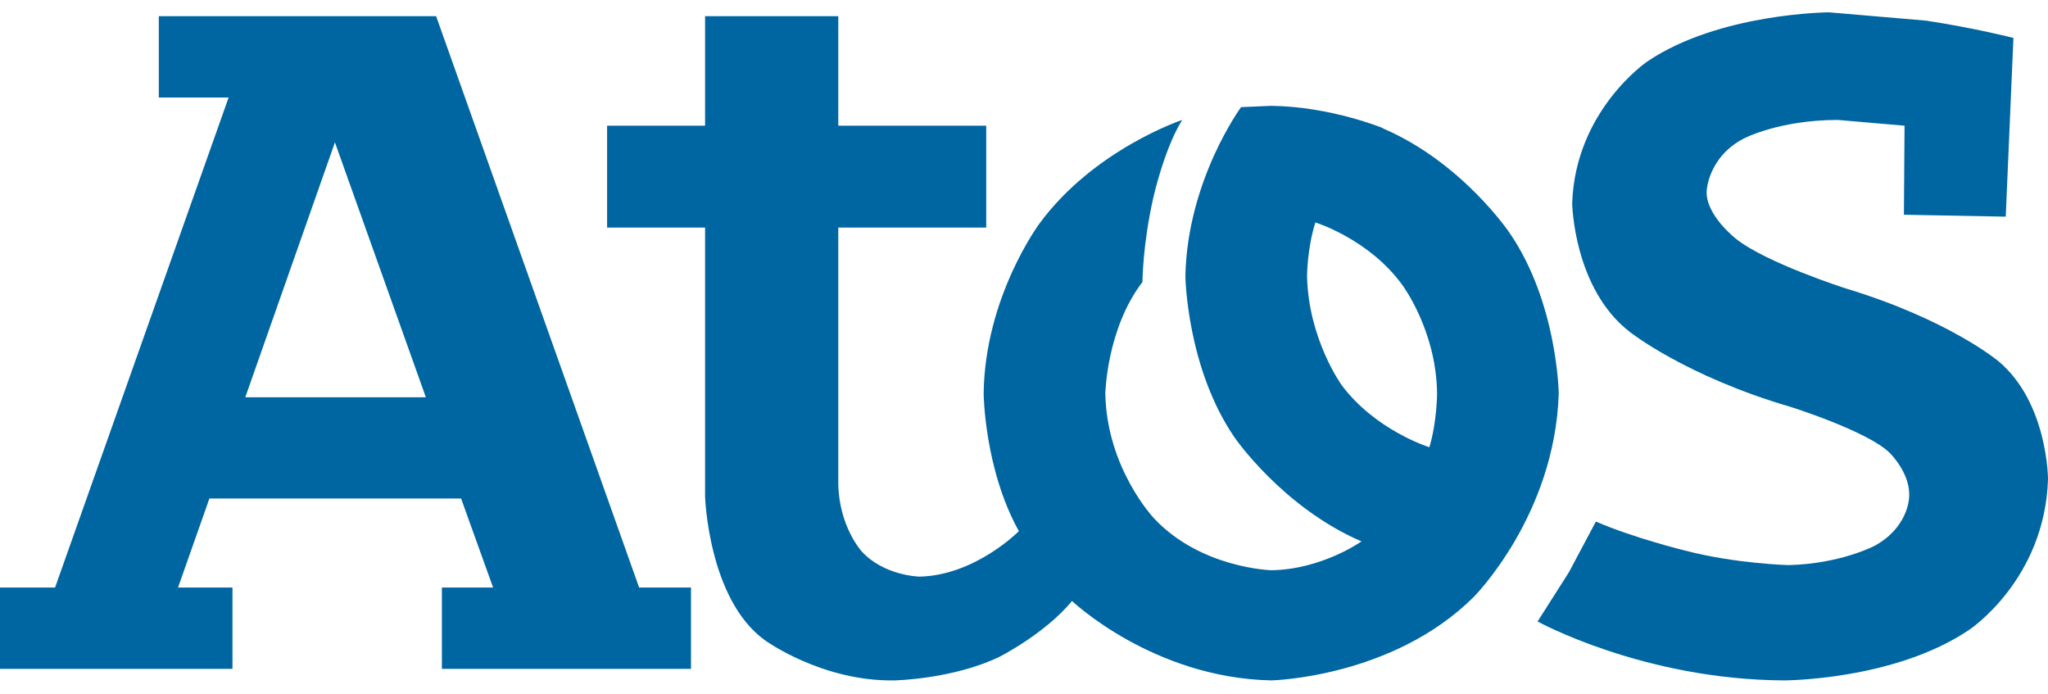 Atos_logo